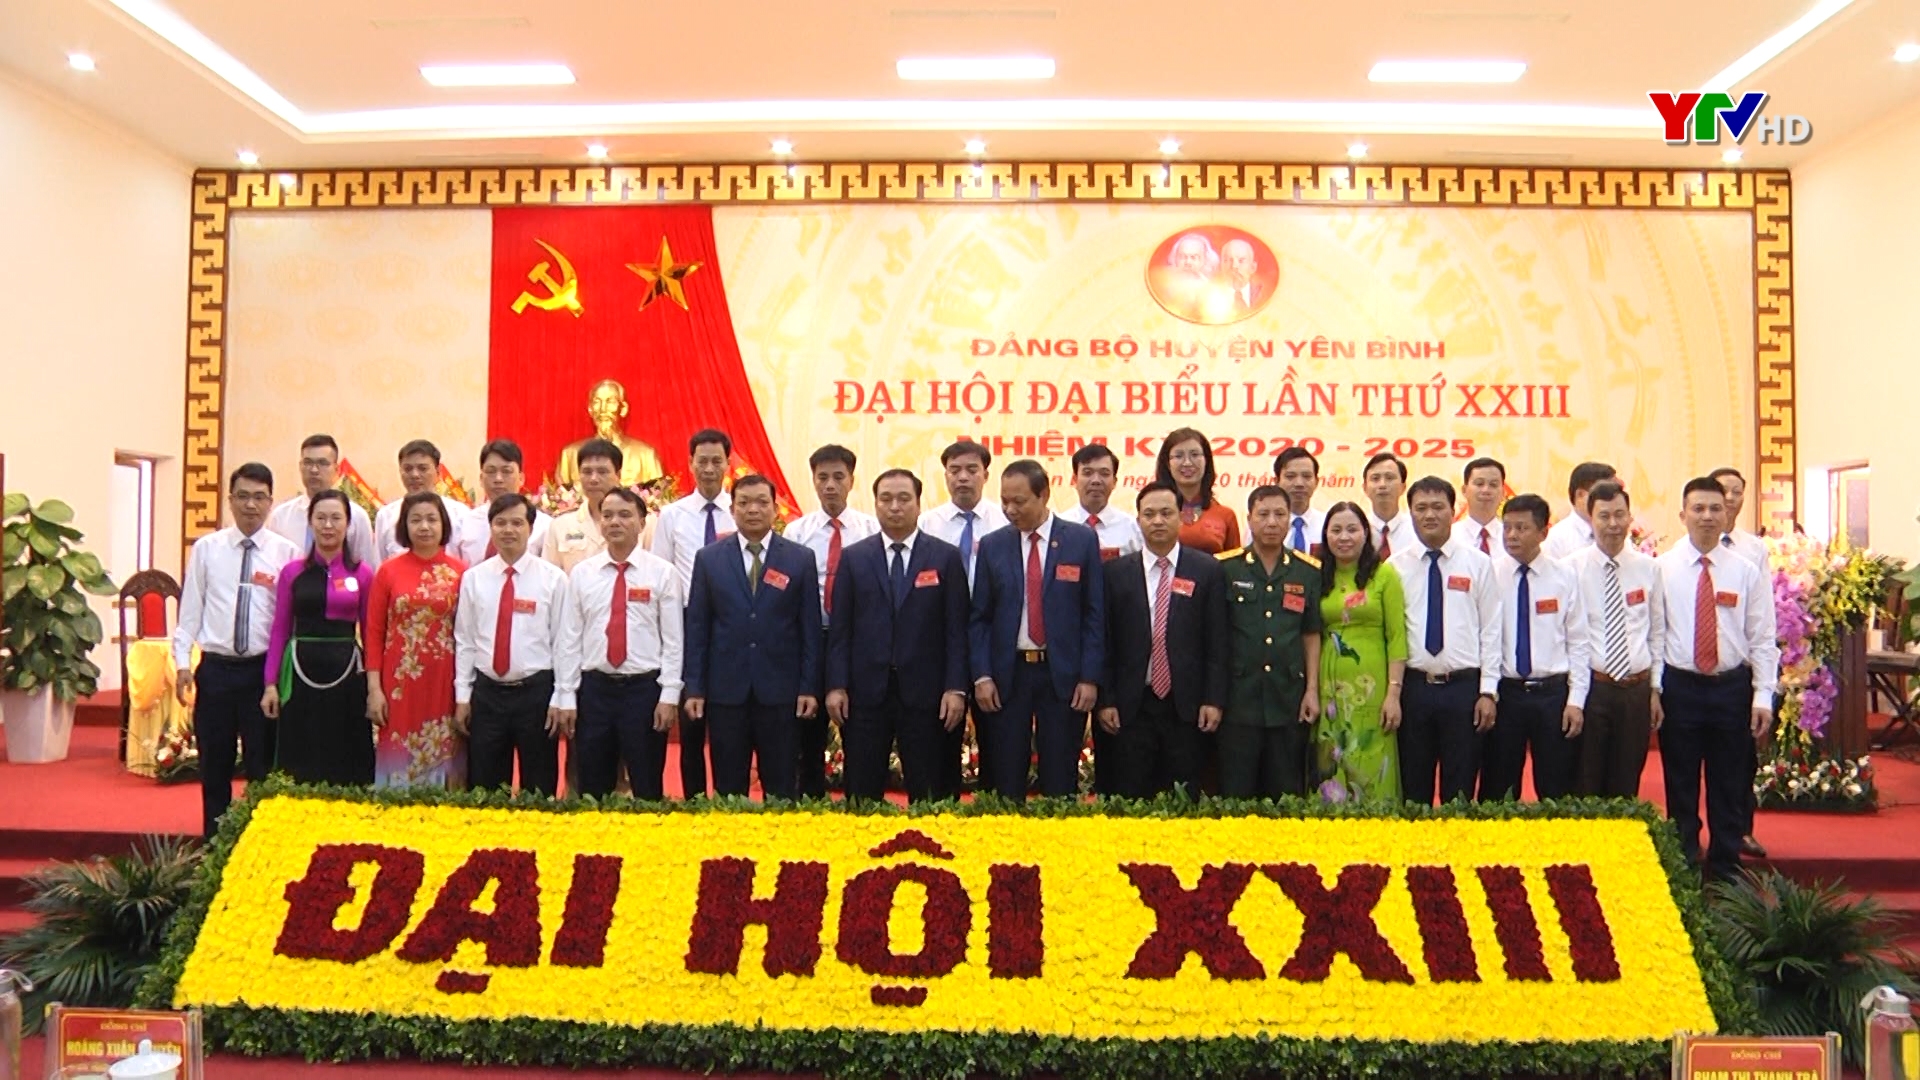 Đại hội đại biểu Đảng bộ huyện Yên Bình lần thứ XXIII thành công tốt đẹp